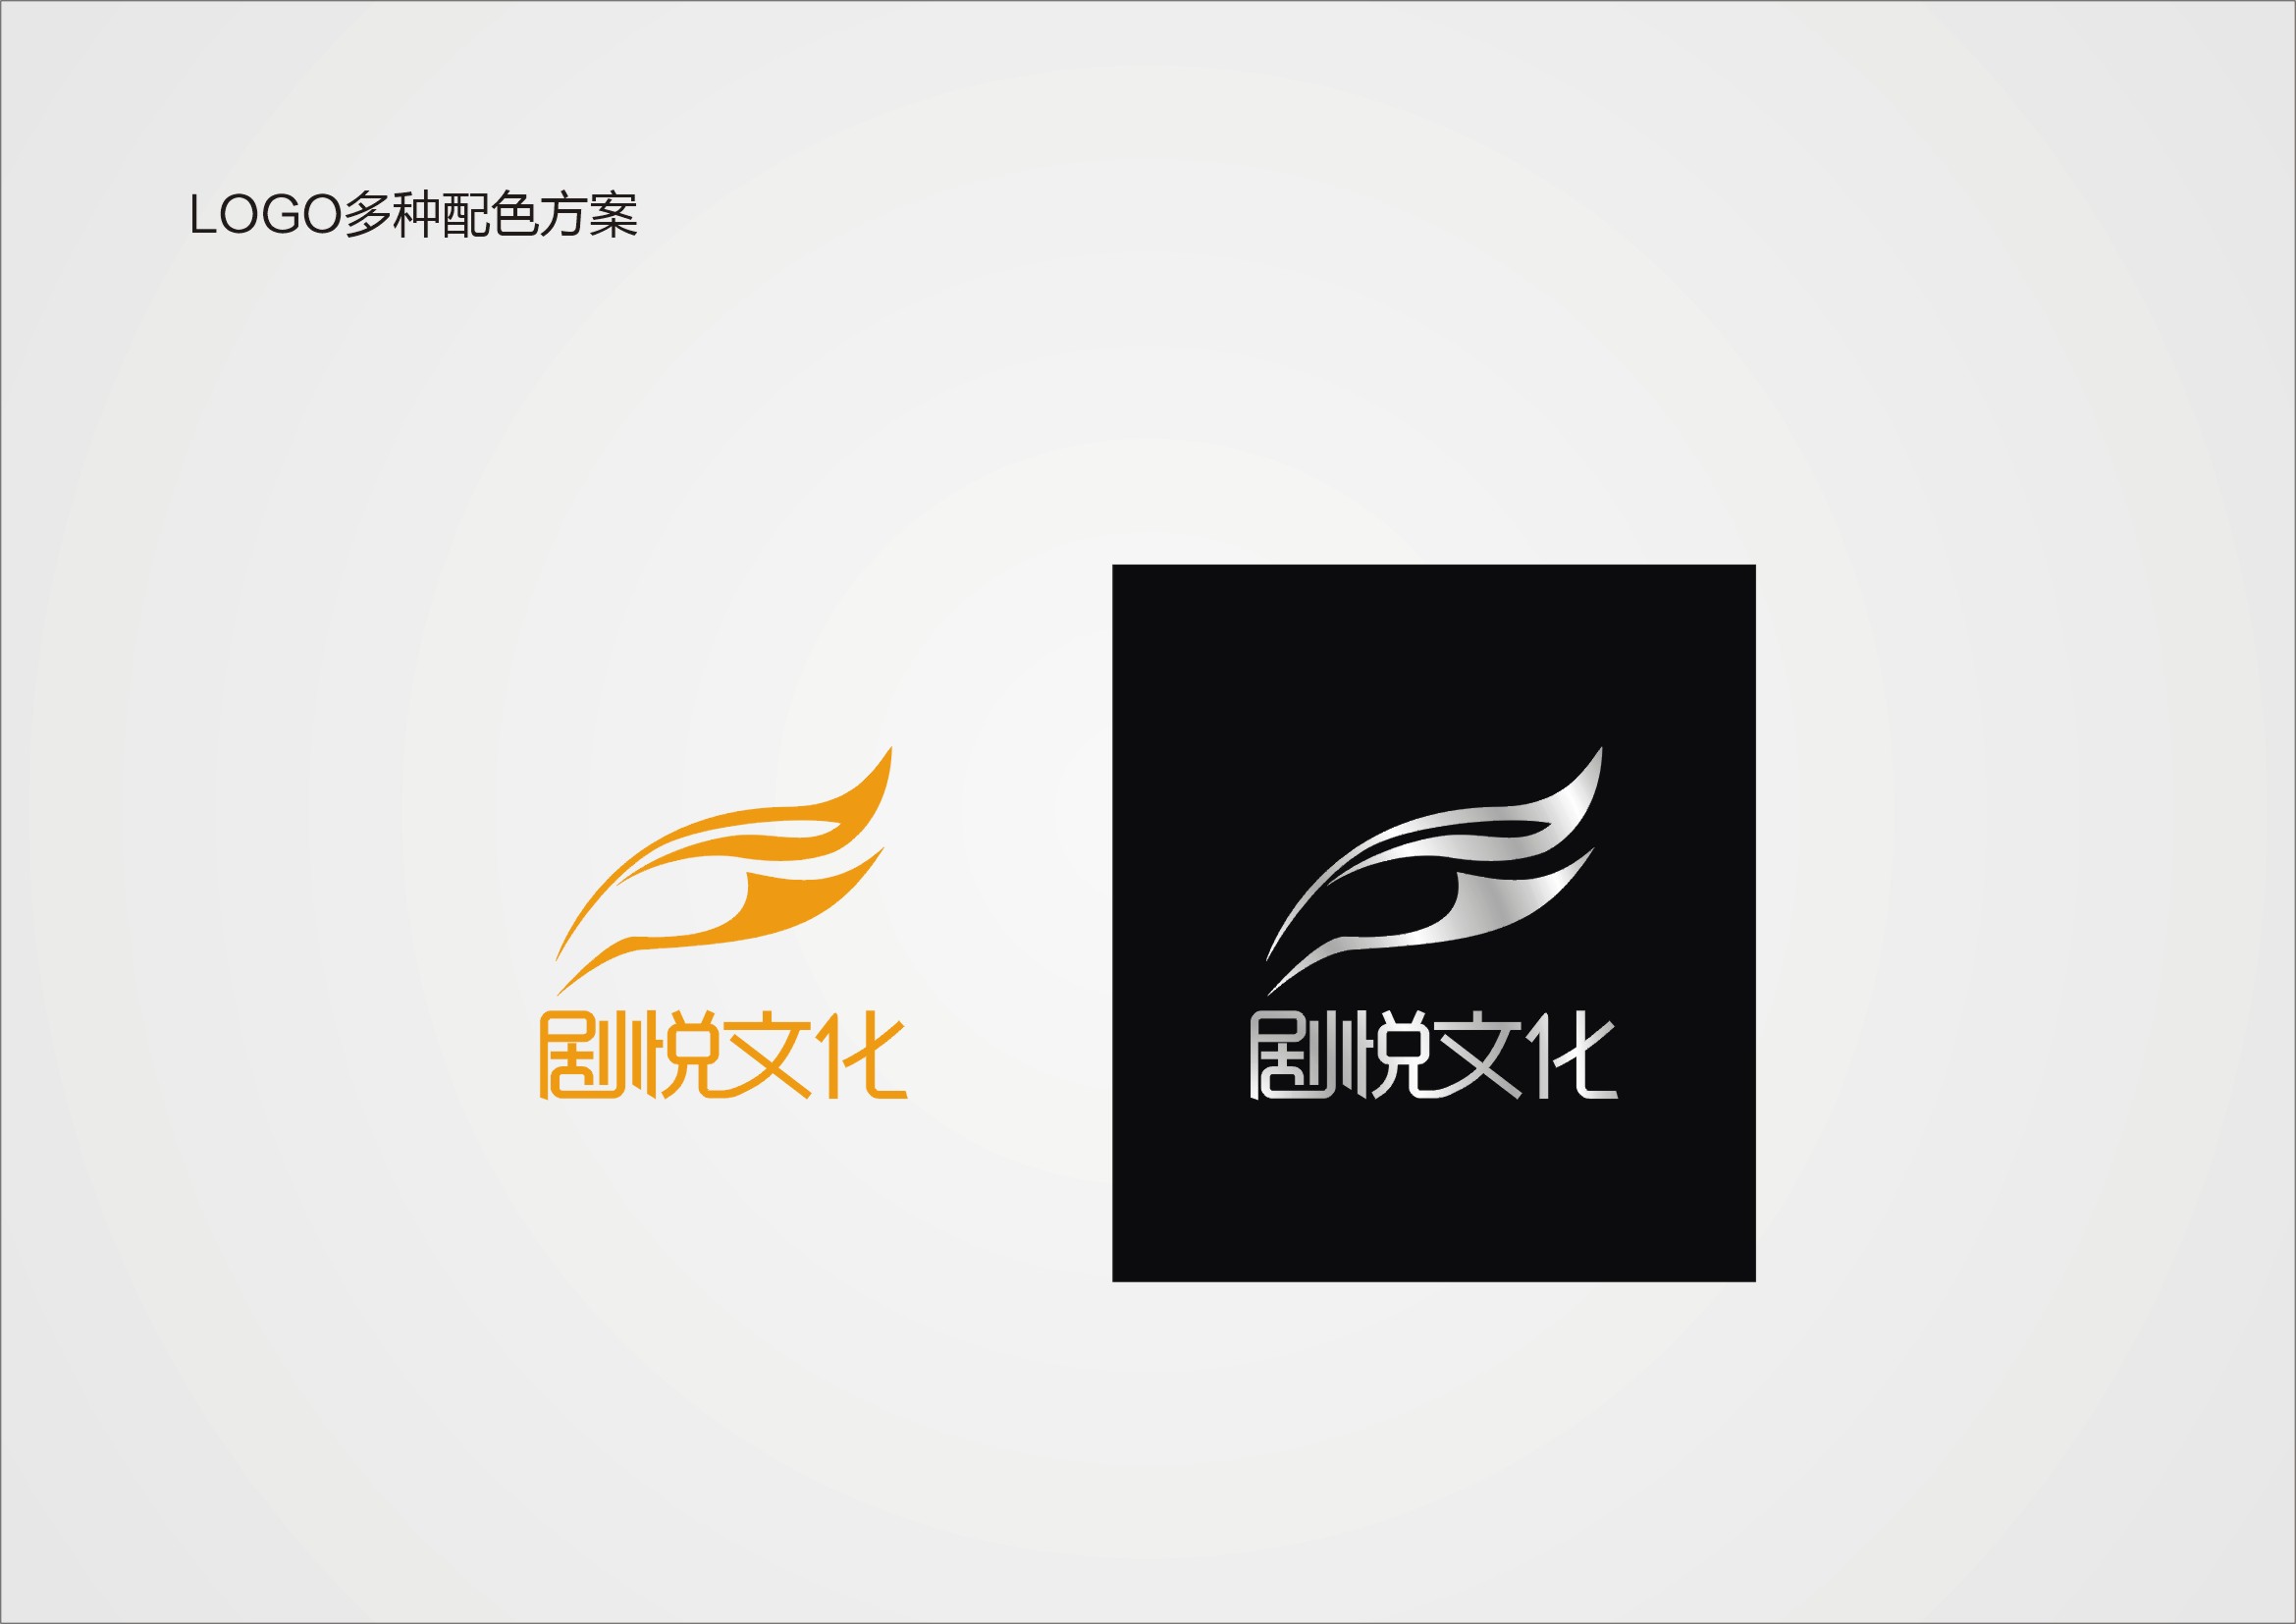 上海剧悦文化传播有限公司logo设计_410元_K